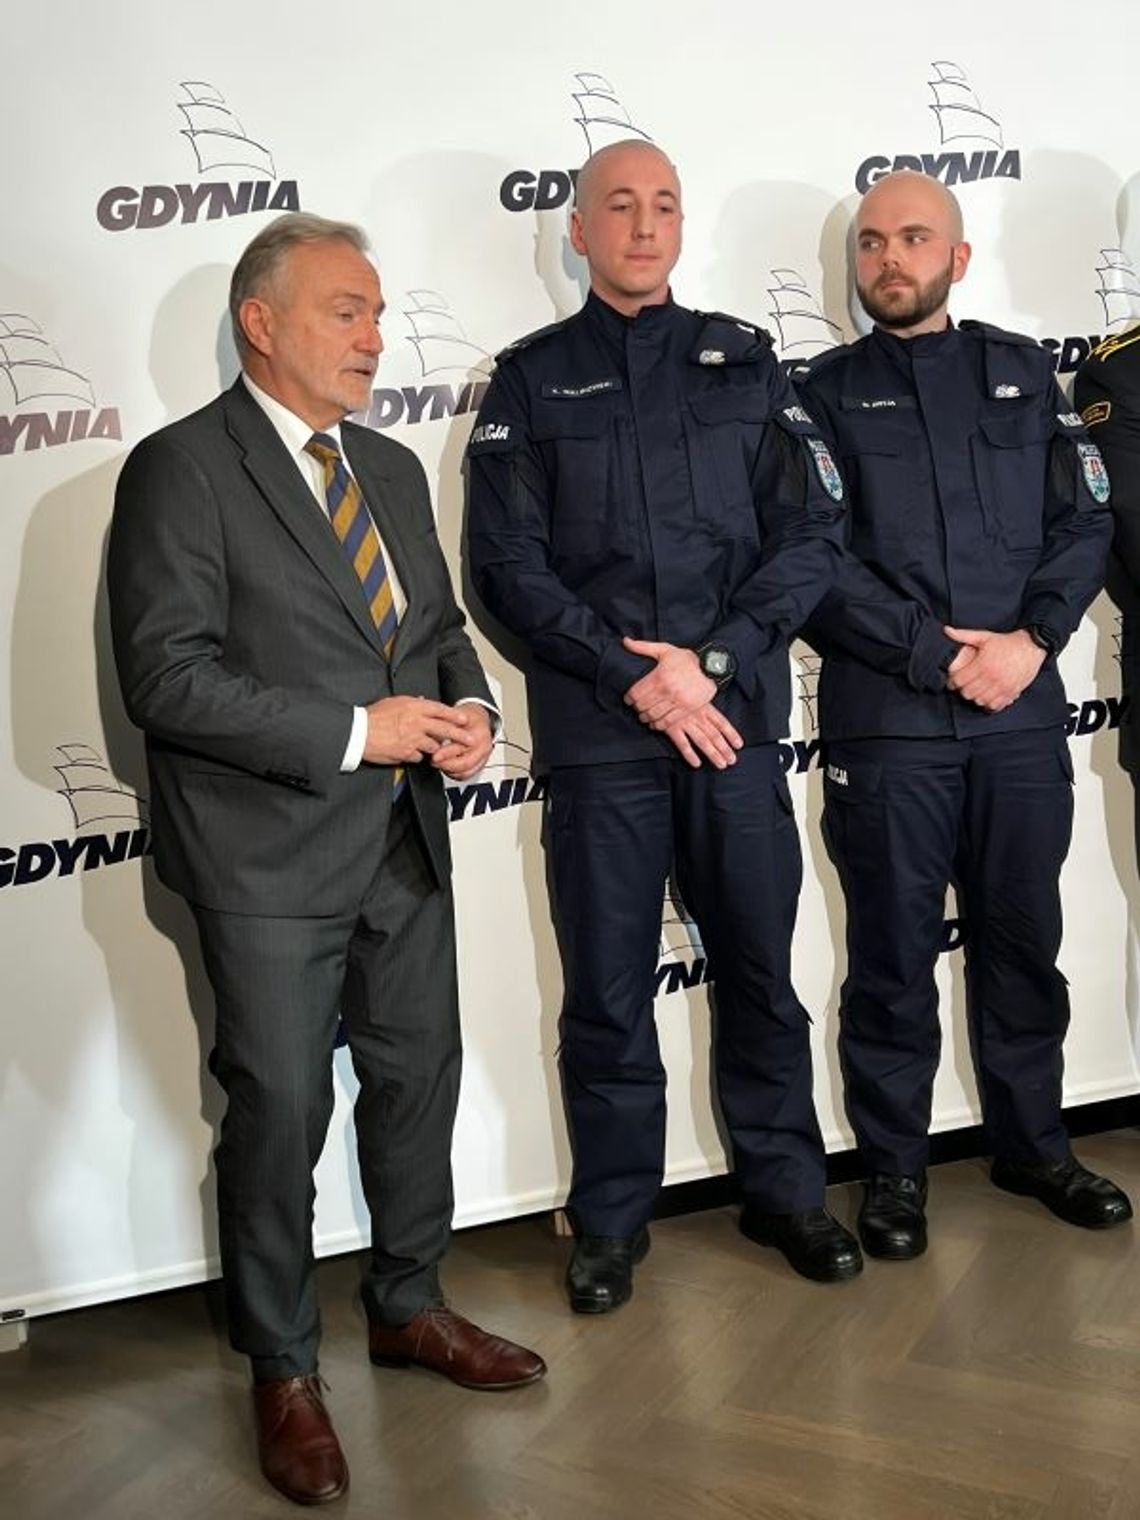 prezydent Gdyni podziękował policjantom ze Śródmieścia za bohaterski czyn